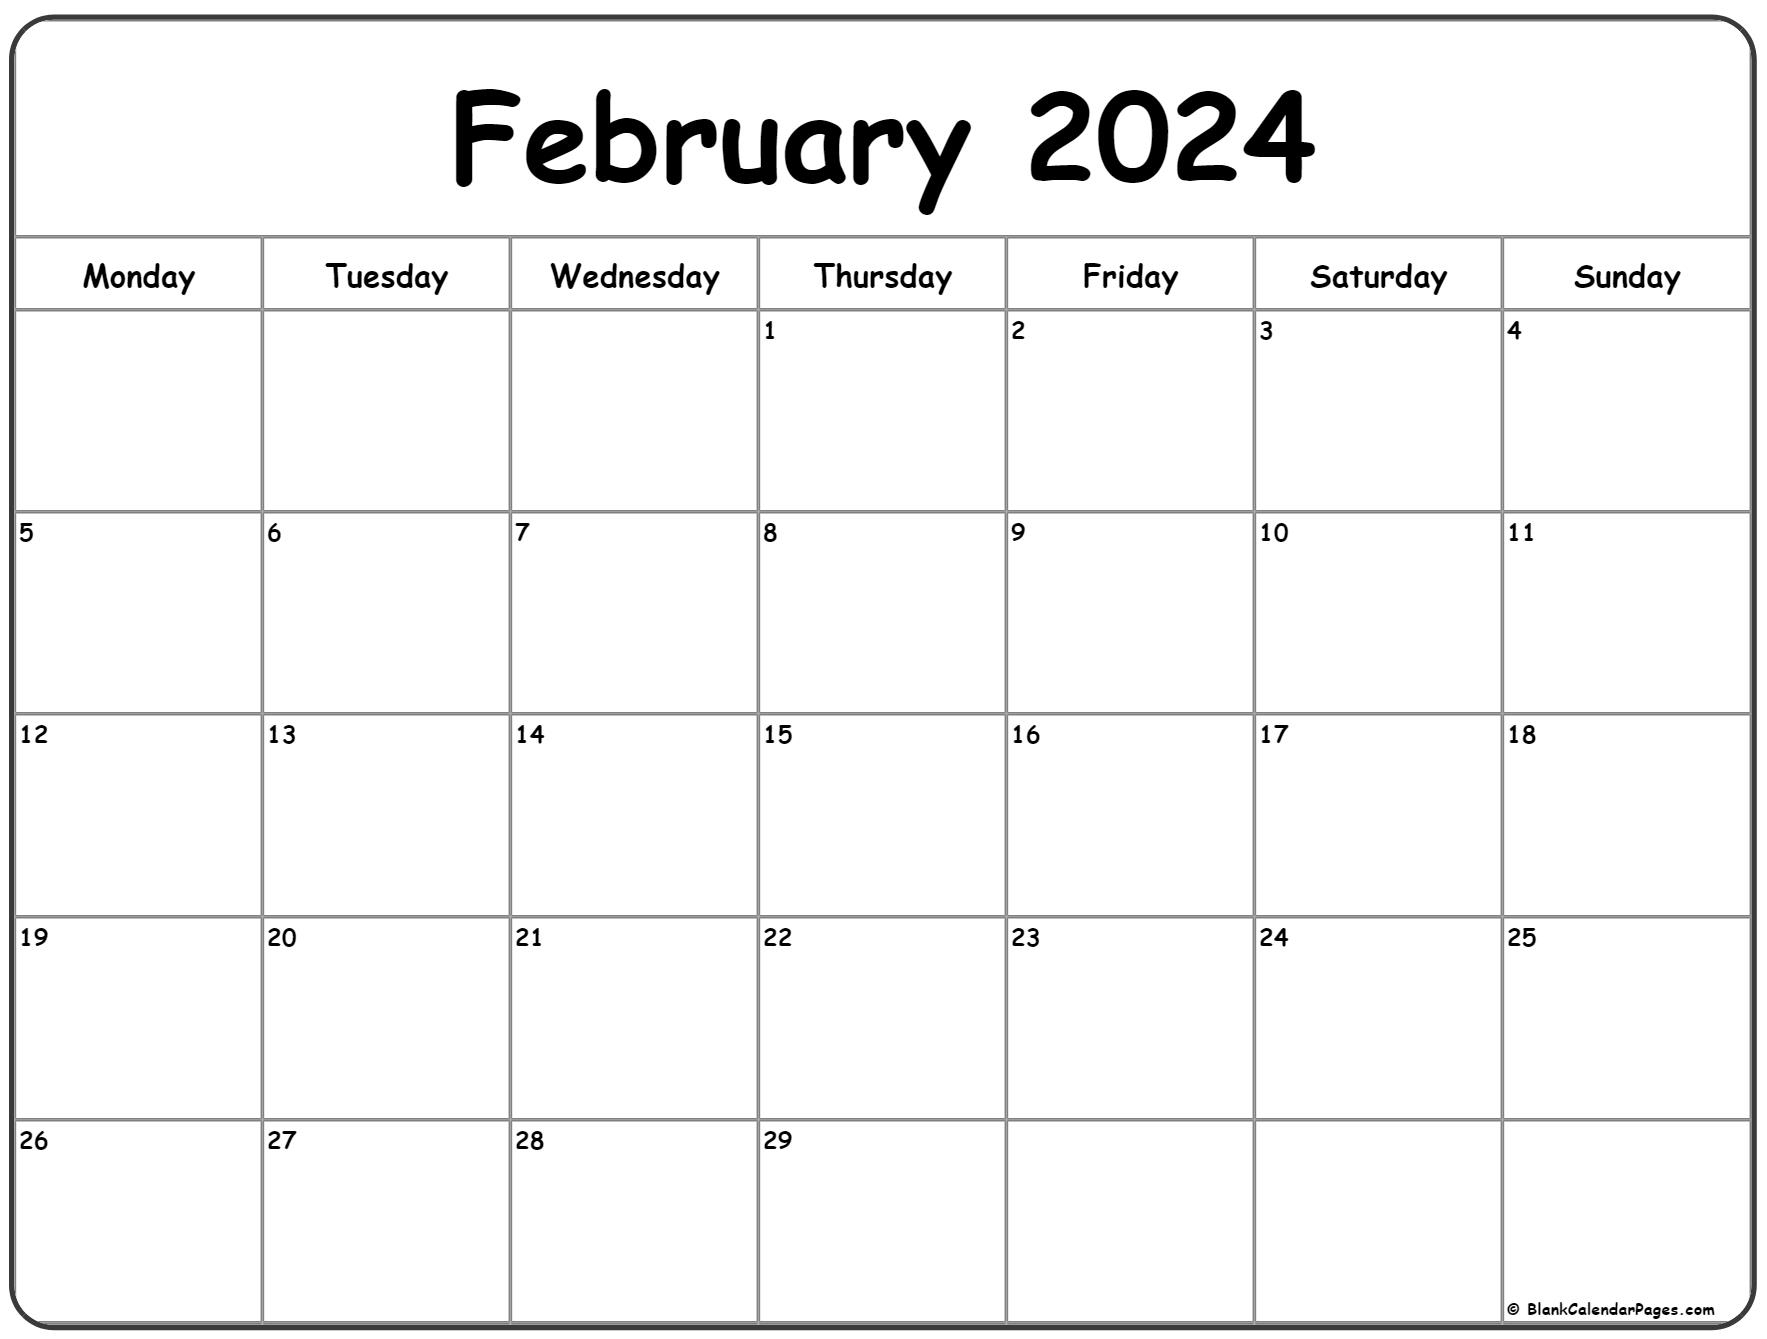 February 2024 Monday Calendar | Monday To Sunday for February 2024 Printable Calendar